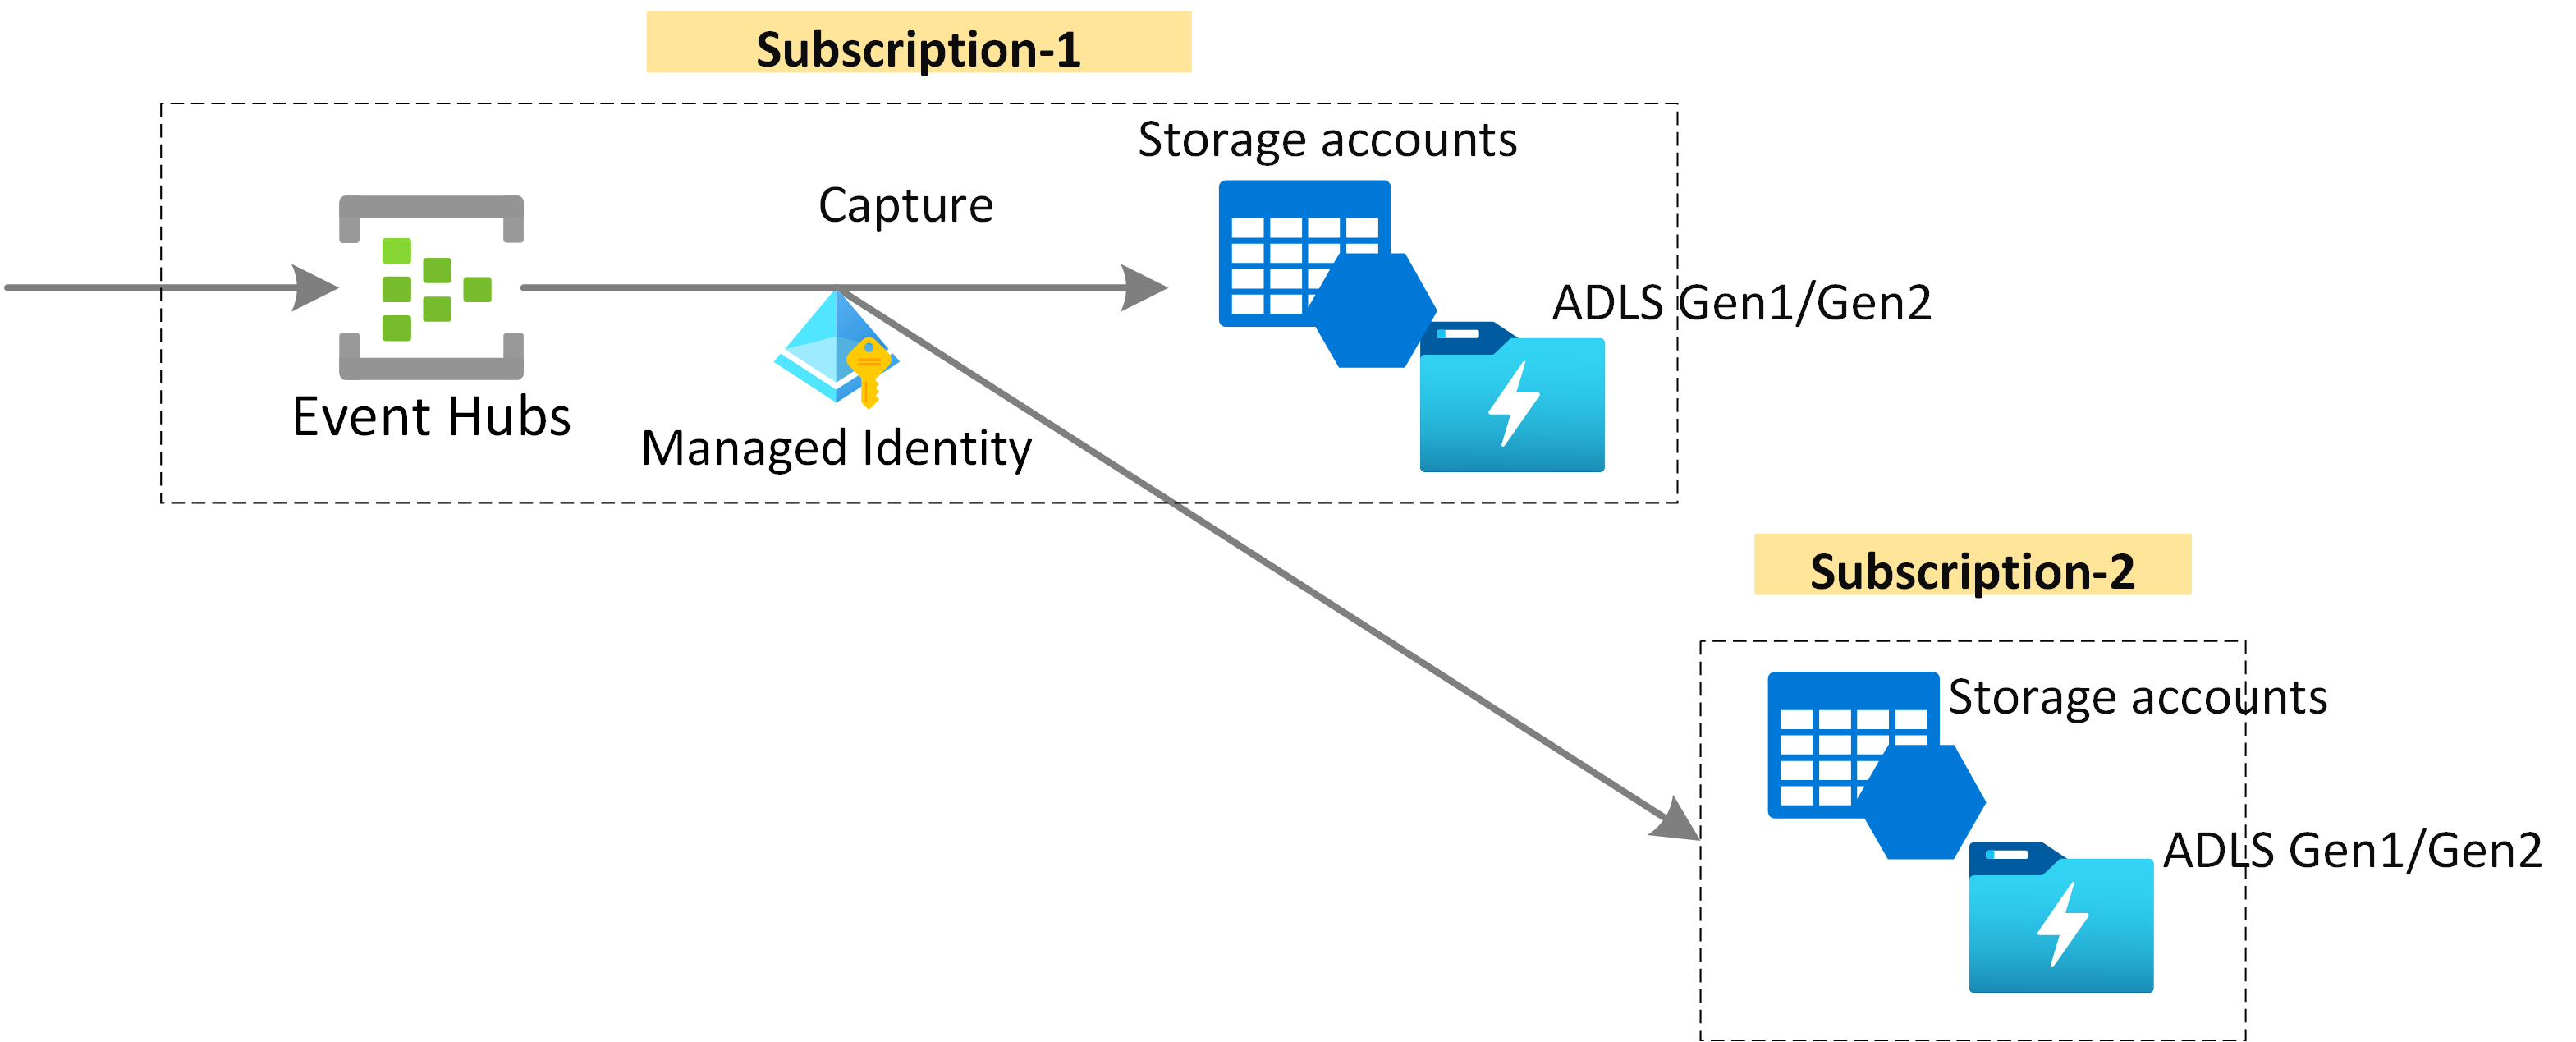 Image montrant la capture de données Event Hubs dans le Stockage Azure ou dans Azure Data Lake Storage à l’aide de l’identité managée